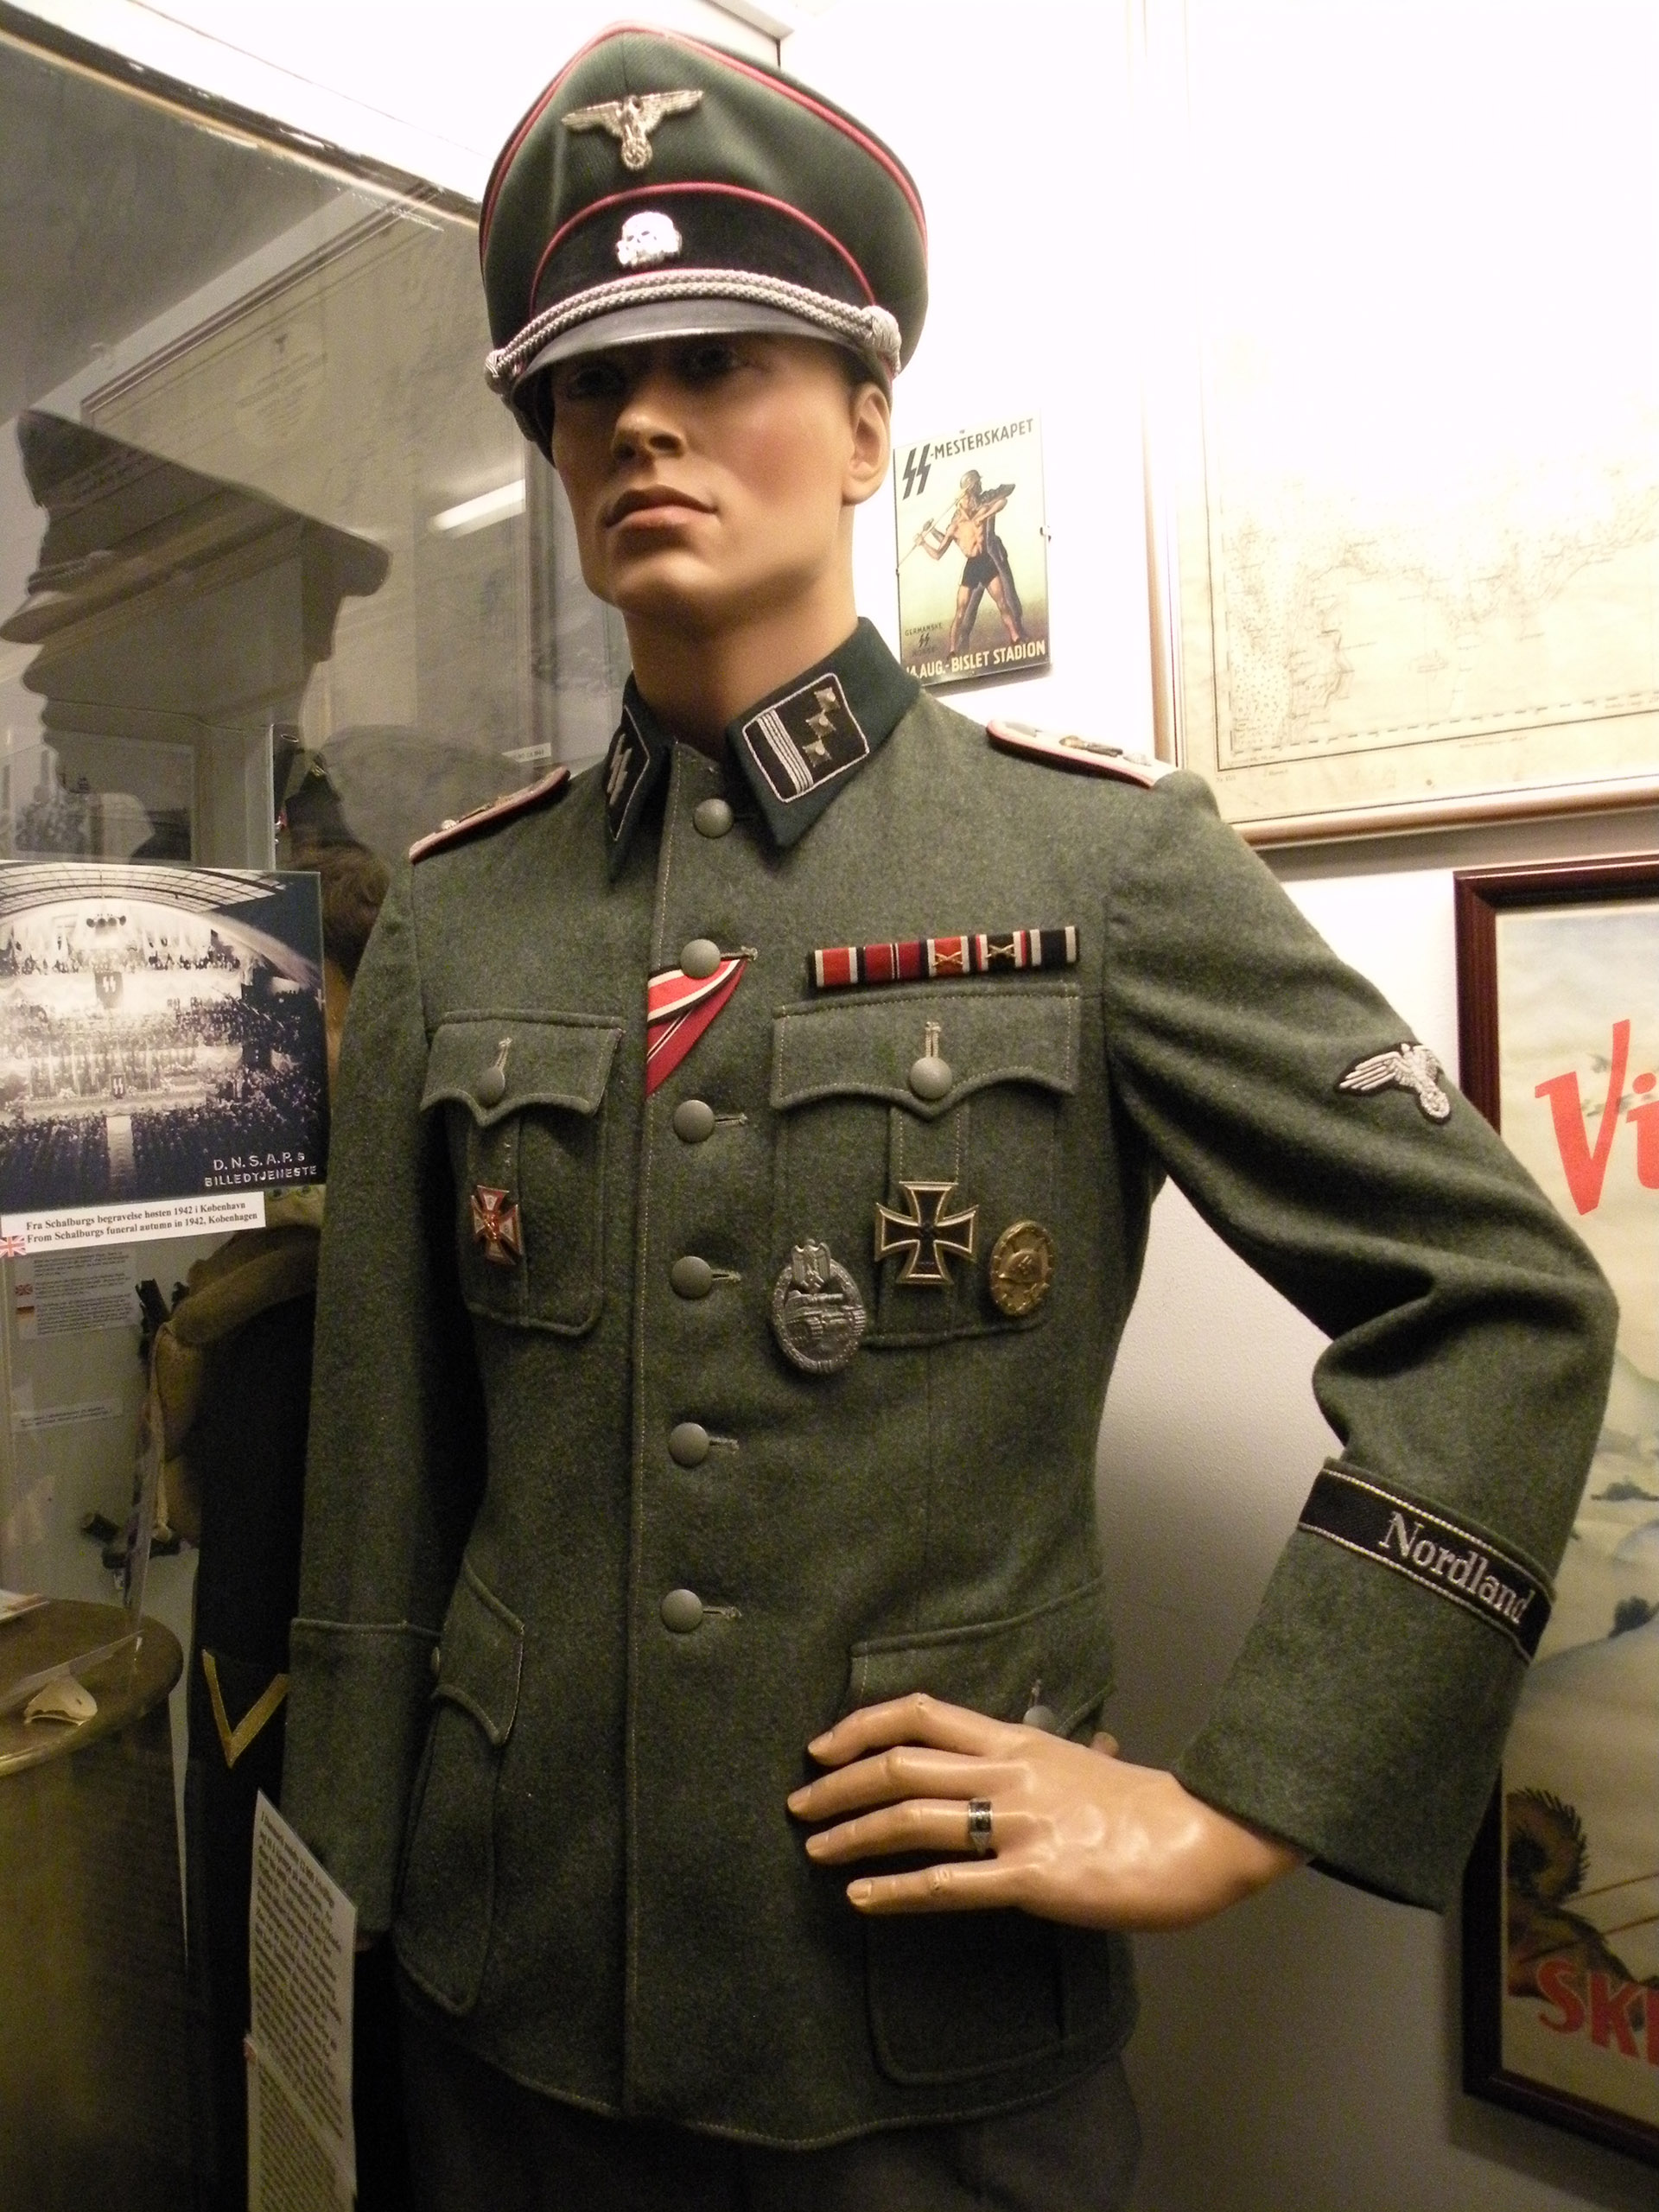 Schalburgs uniform